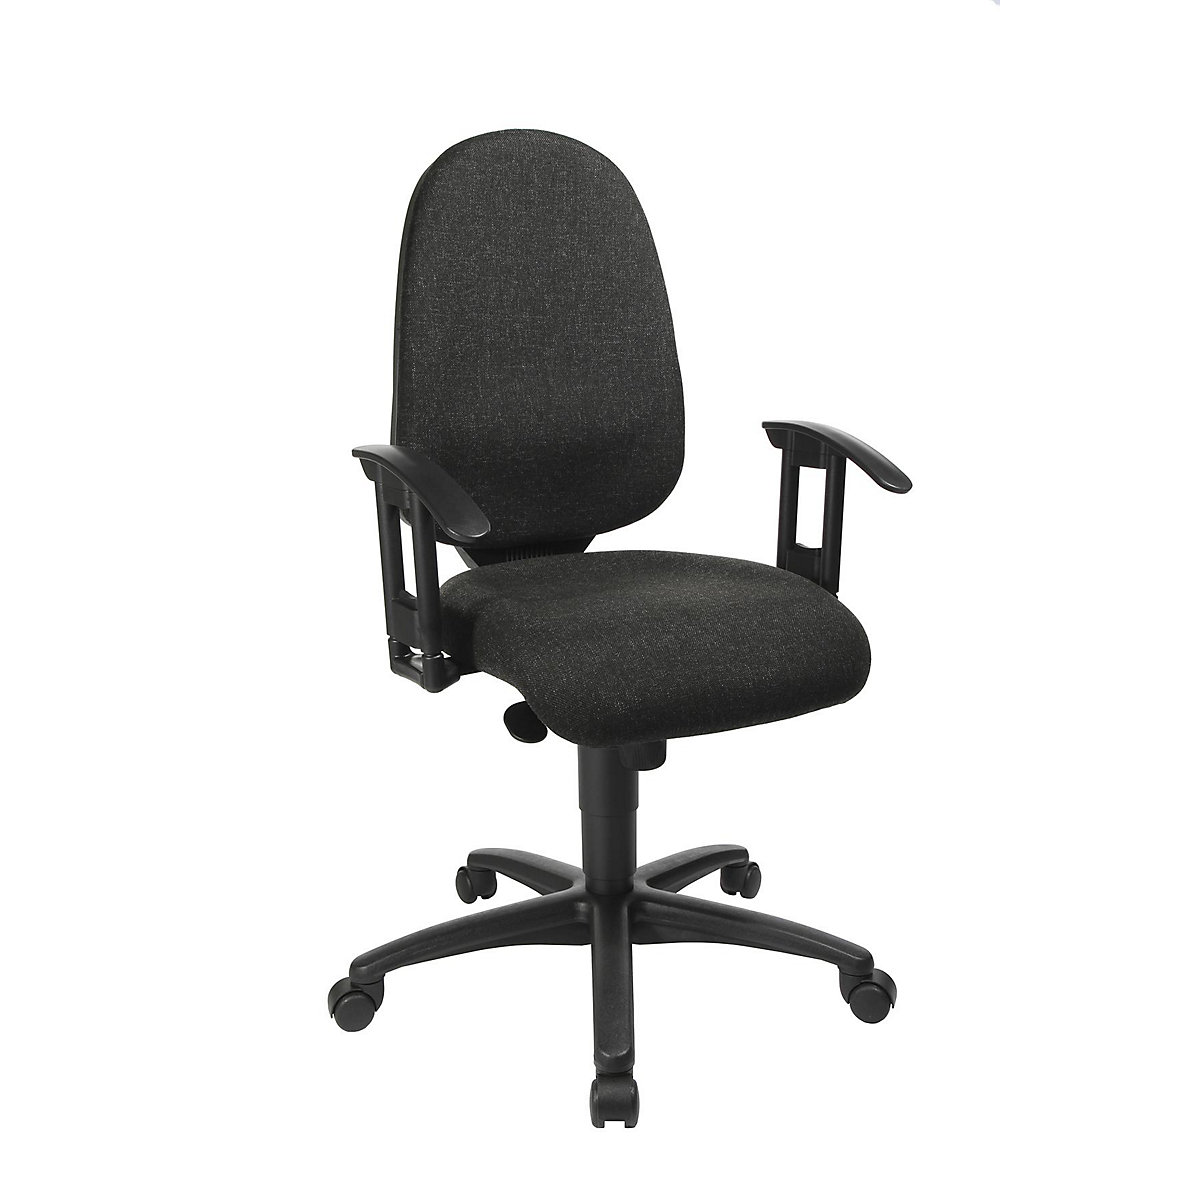 Okretna stolica s potporom za kralježnicu, sinkrona mehanika, sjedalo s potporom za kralježnicu – Topstar (Prikaz proizvoda 74)-73